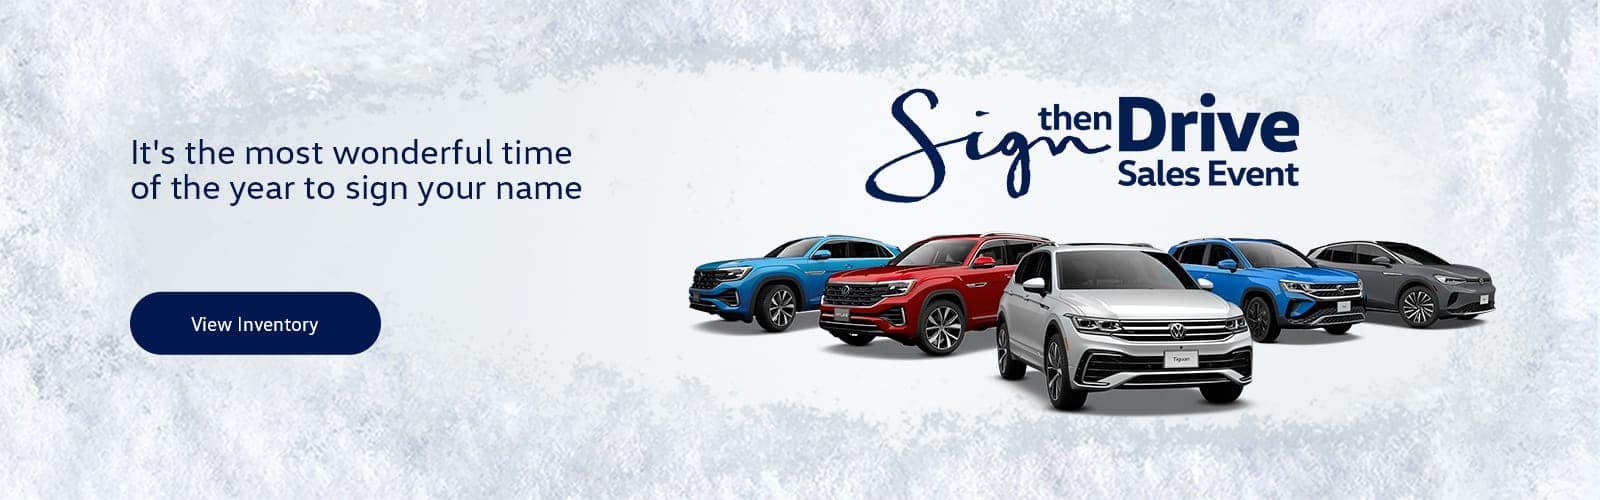 Volkswagen Sign then Drive Sales Event